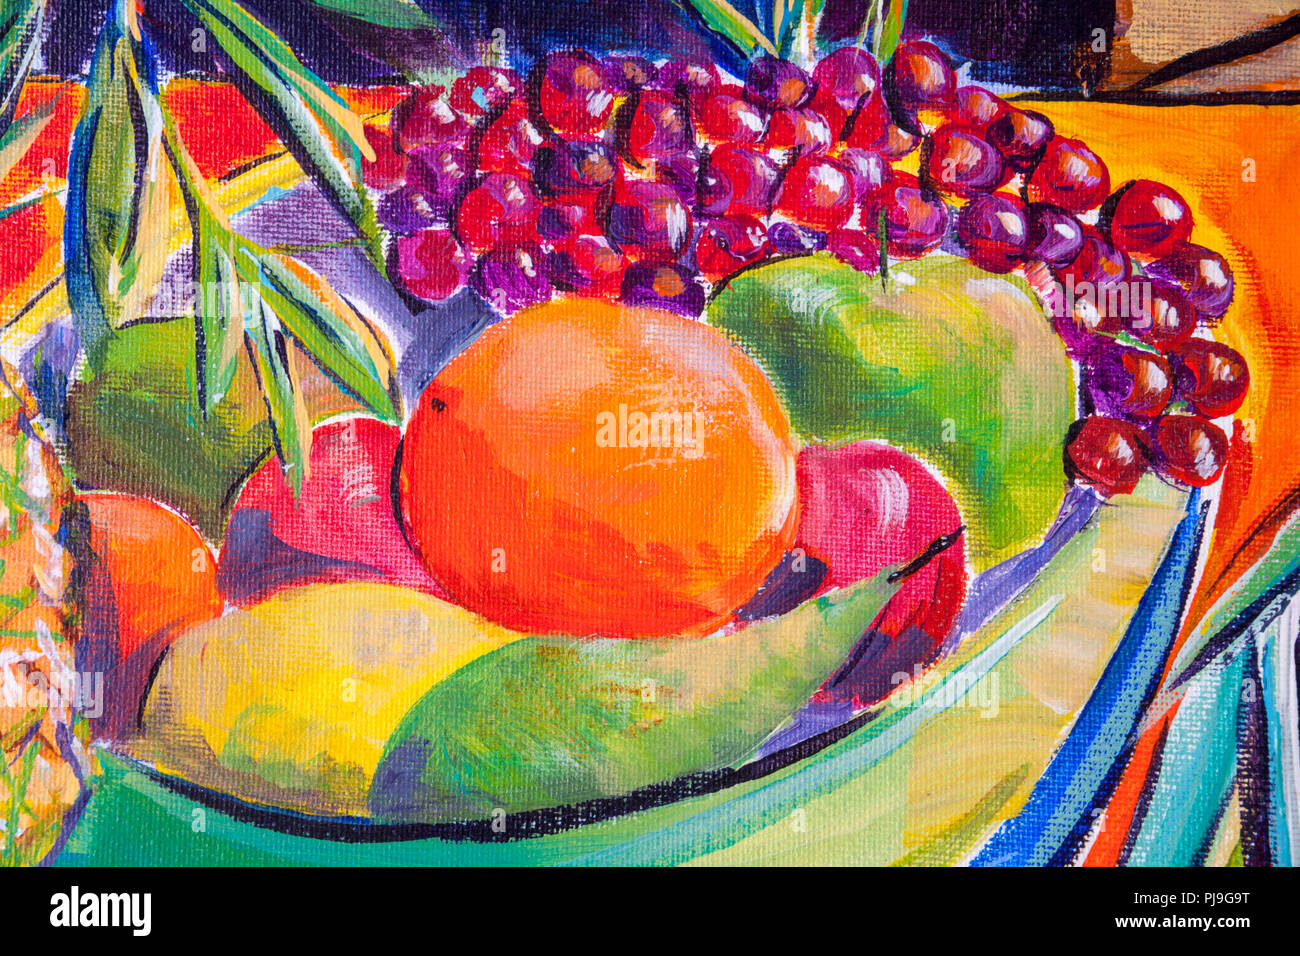 Détails des peintures acryliques montrant la couleur, les textures et les techniques. Un bol de fruits avec des raisins, oranges et poires. Banque D'Images